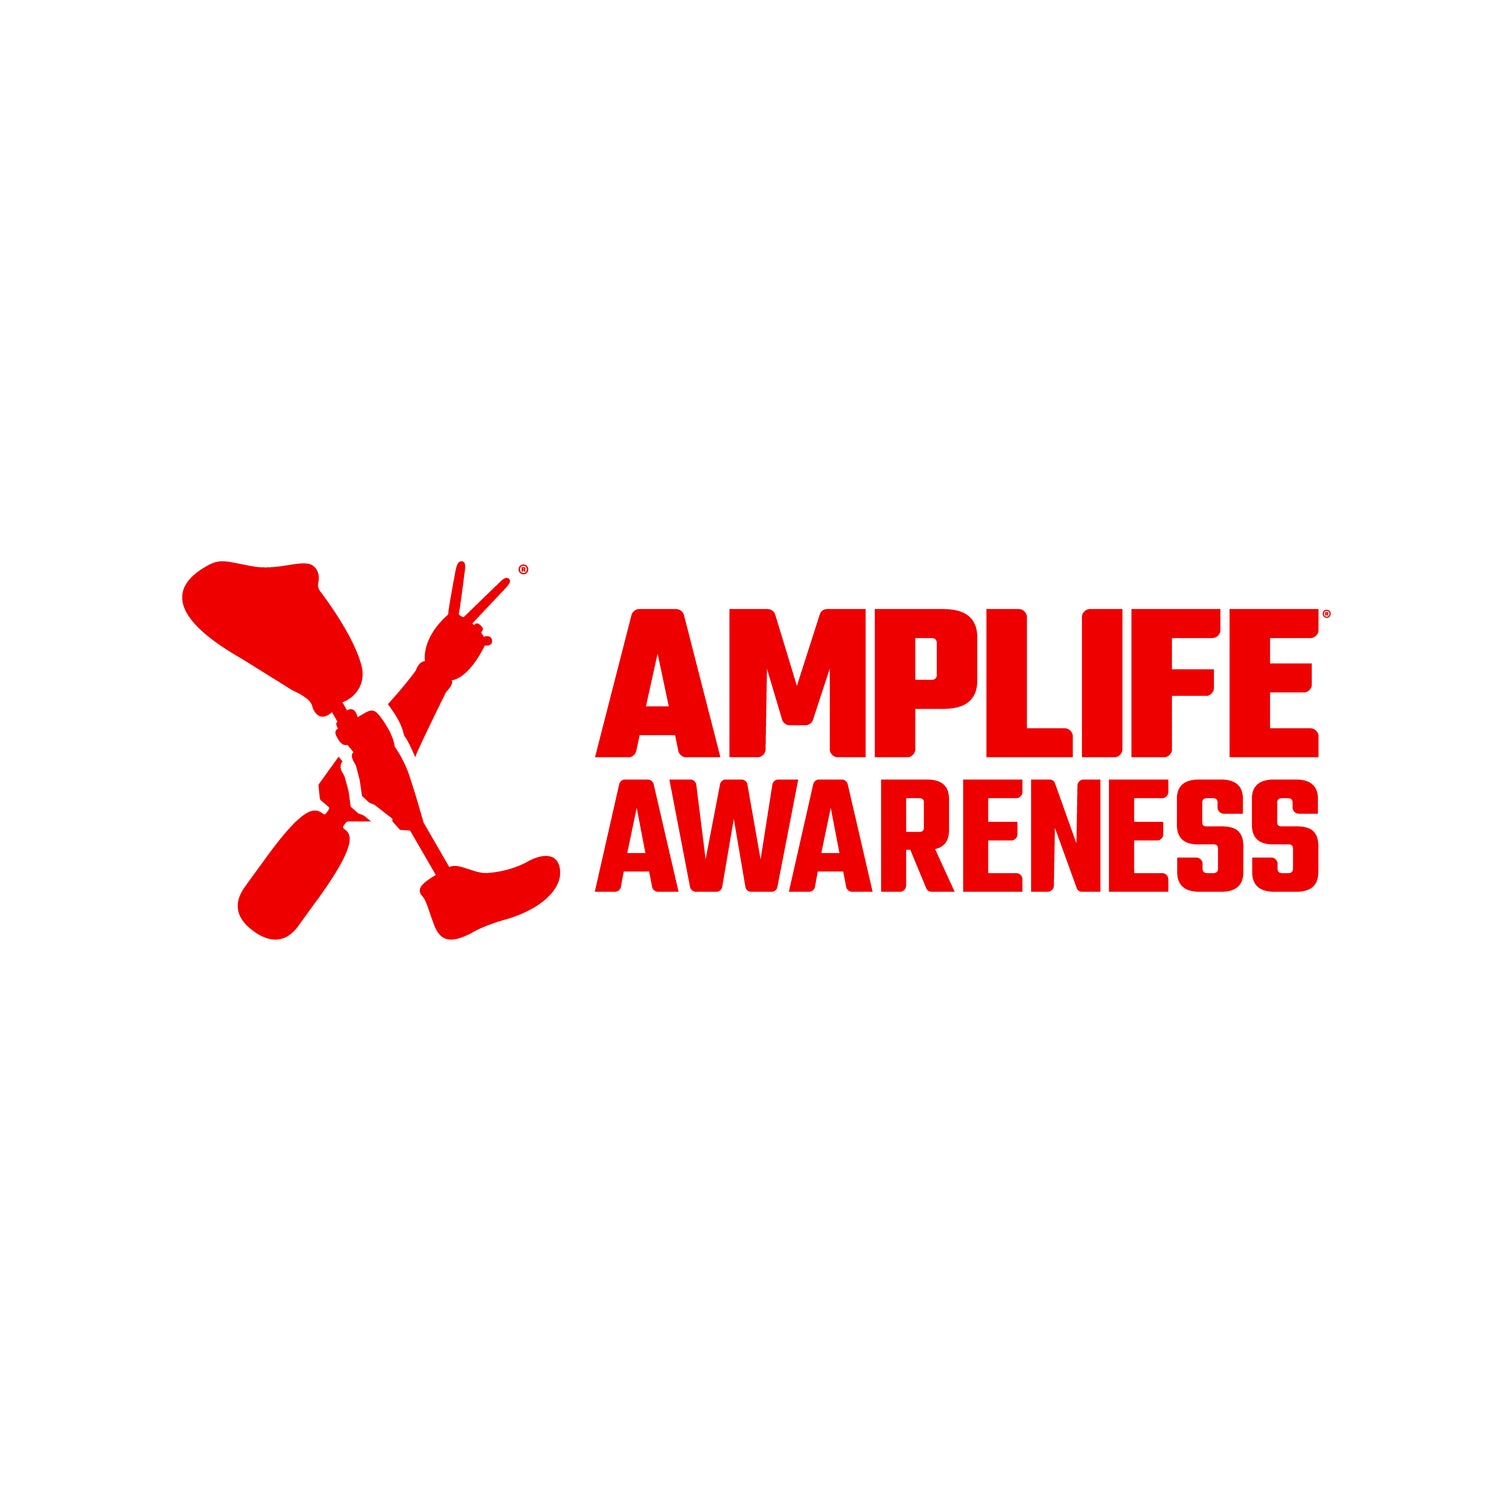 Amplife® Awareness logo